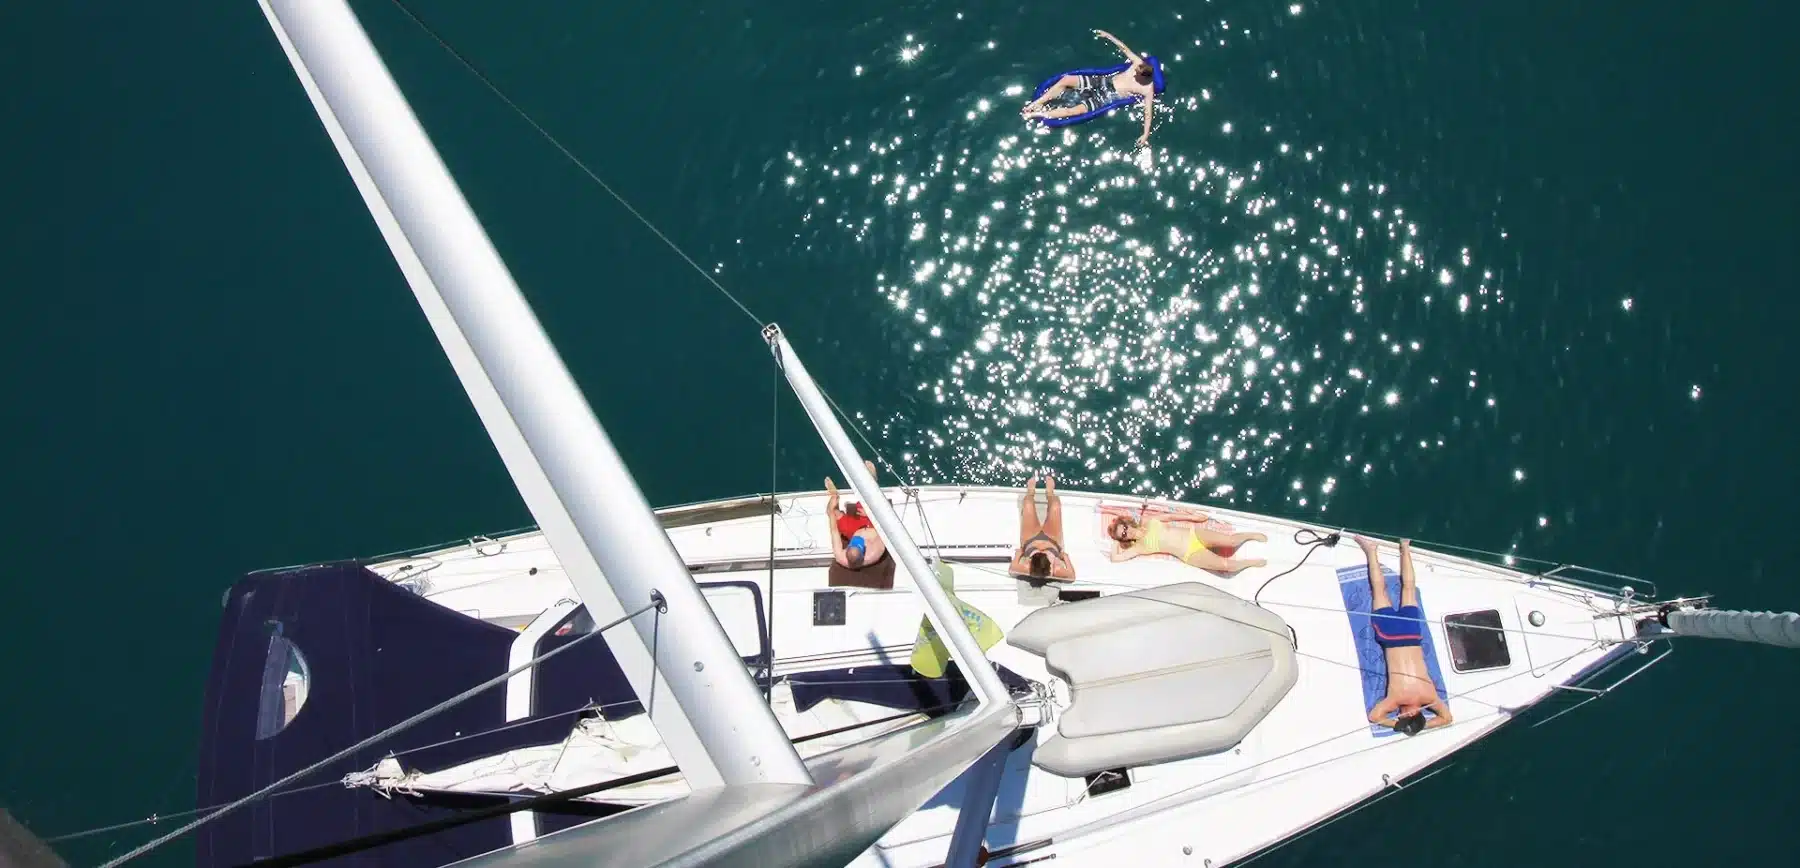 Luftaufnahme einer Yacht auf klarem, blauem Wasser mit Menschen, die auf dem Deck ein Sonnenbad nehmen, und einer Person, die während ihres Segelurlaubs vom Mast ins Wasser springt.